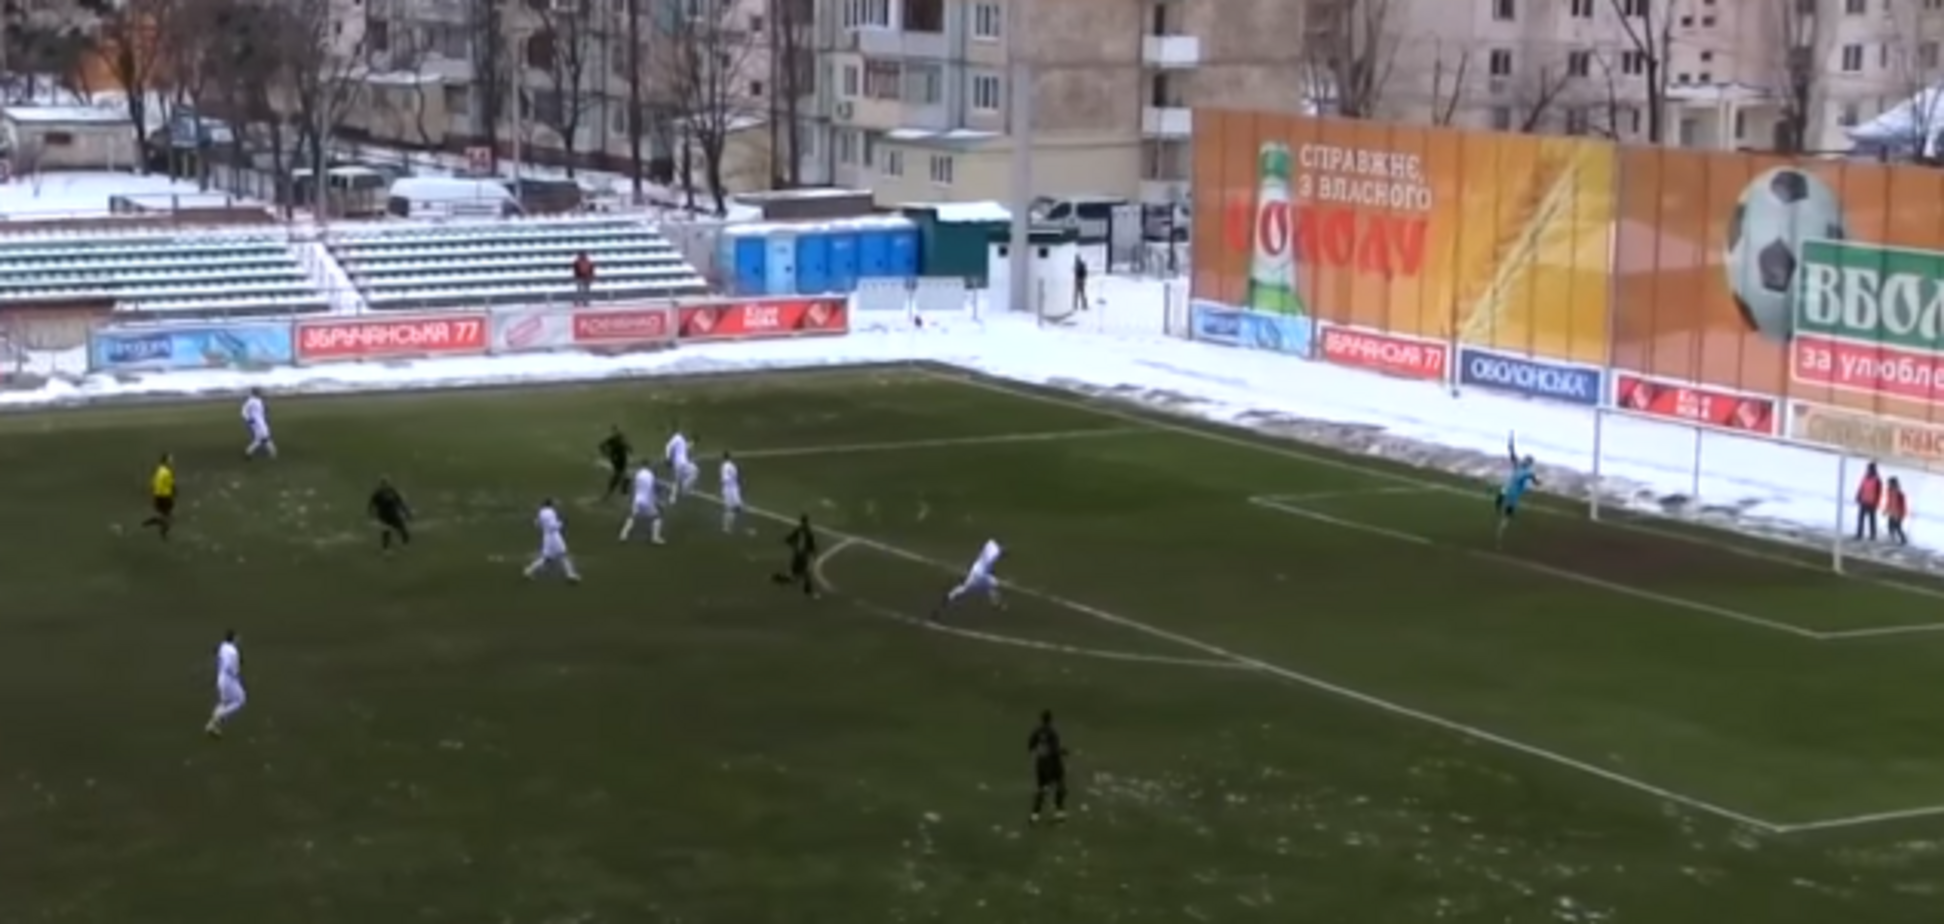 Удар сезона! Футболист из первой лиги Украины забил фантастический гол с 20 метров - опубликовано видео